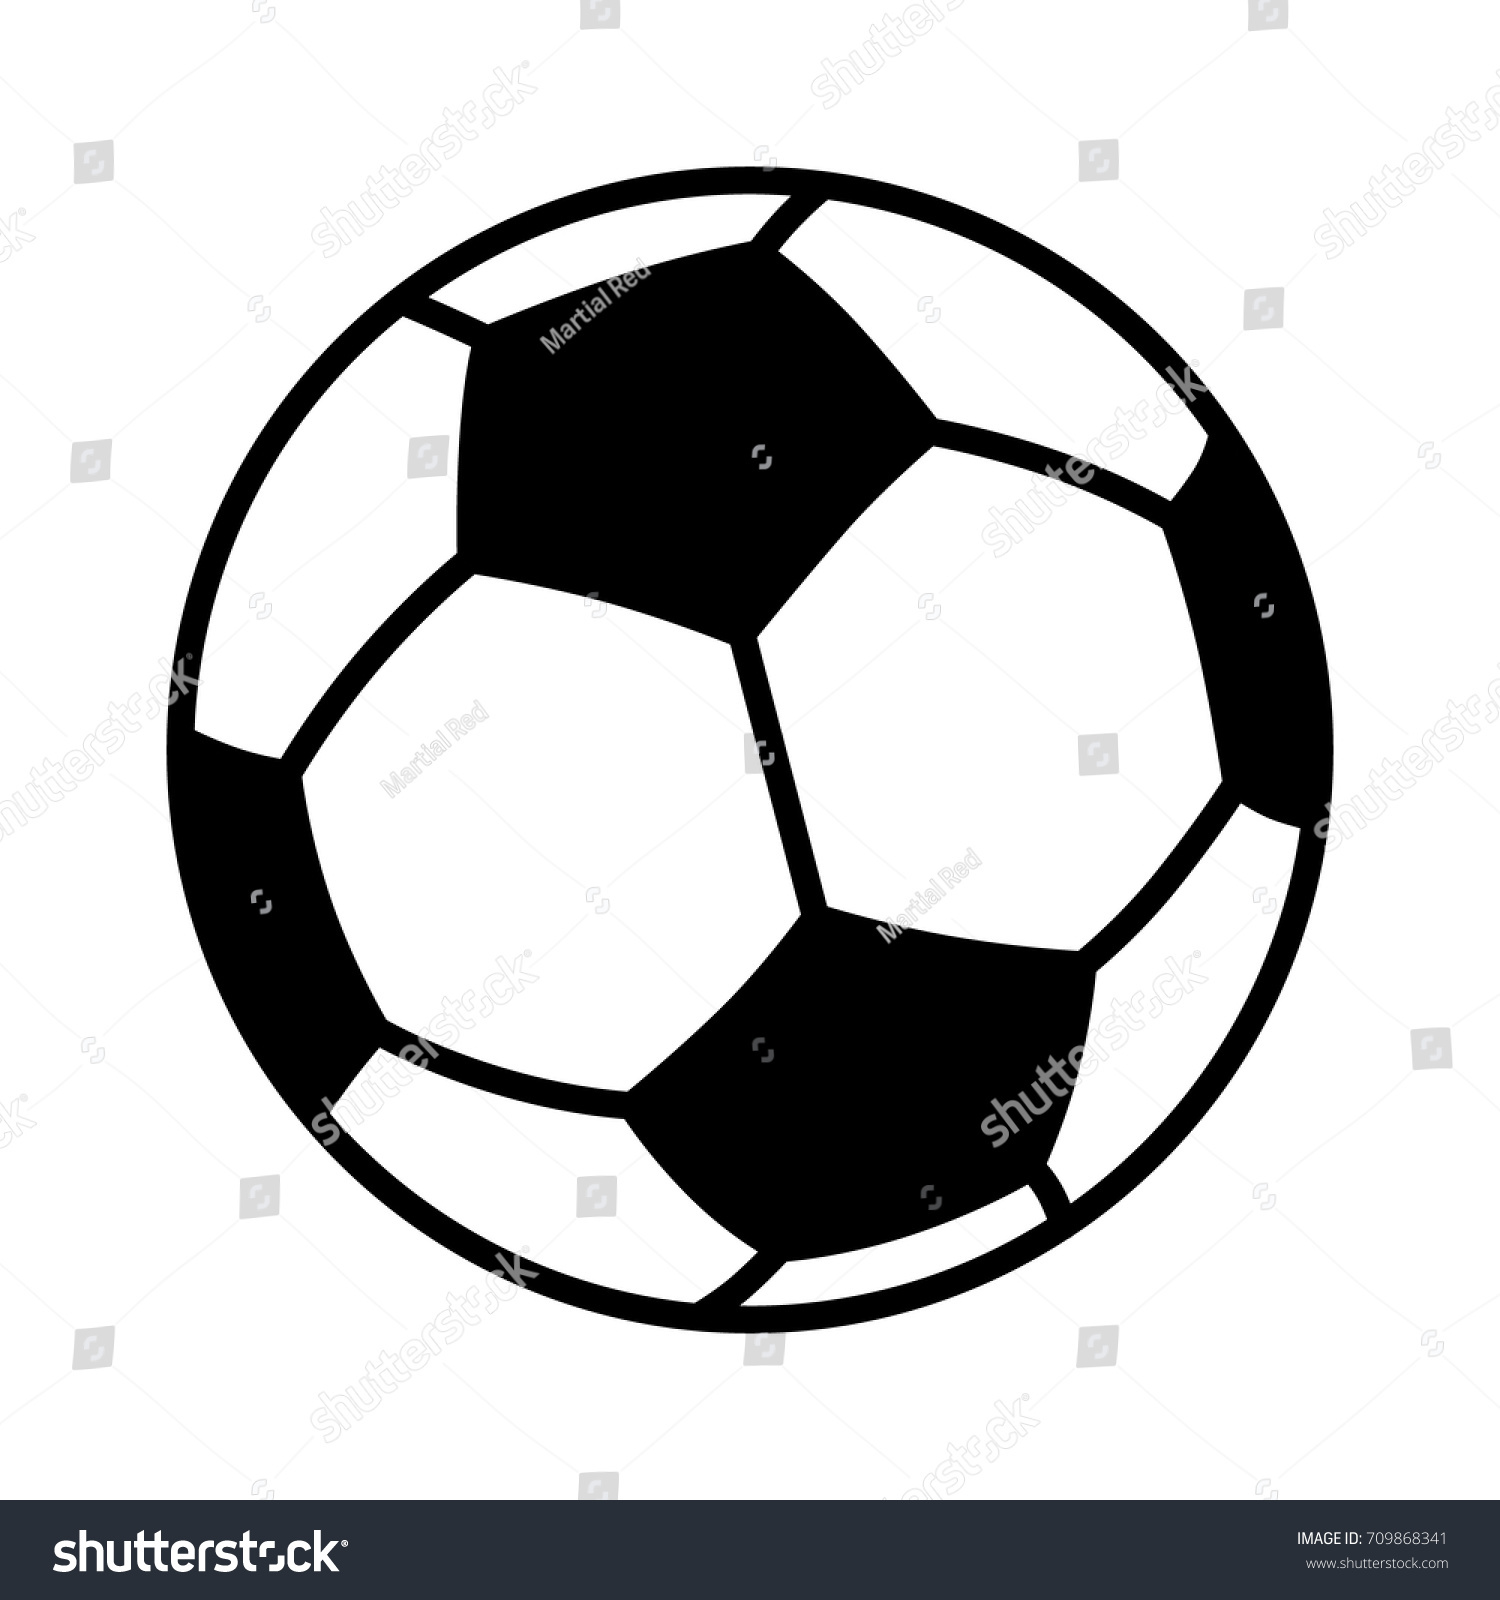 Футбольный мяч на прозрачном фоне